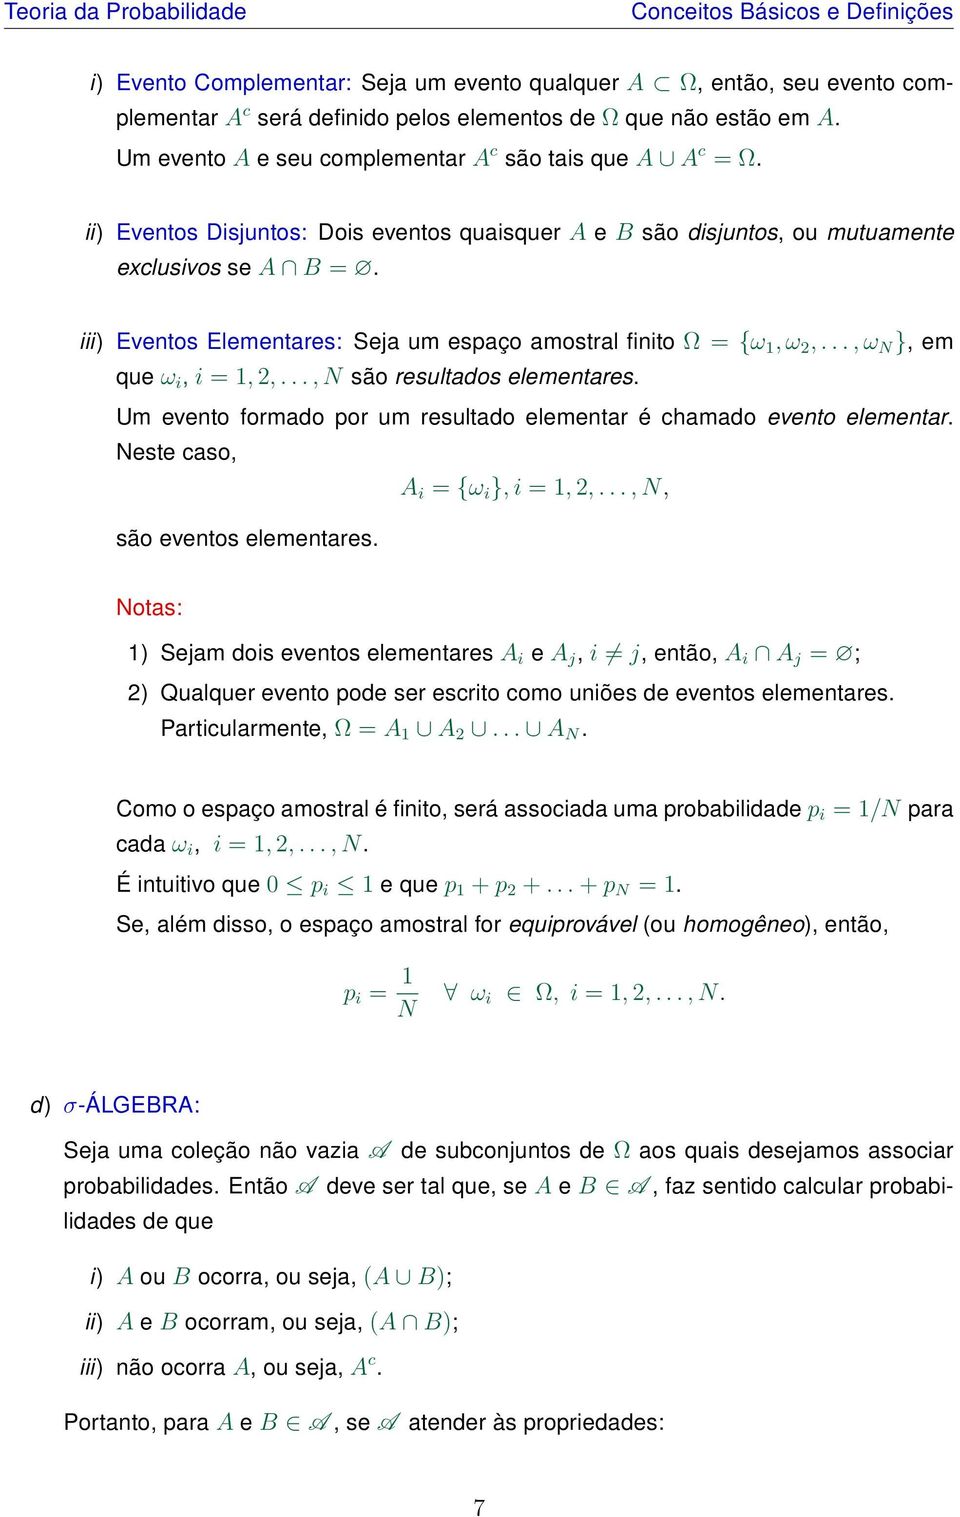 iii) Eventos Elementares: Seja um espaço amostral finito Ω = {ω 1, ω 2,..., ω N }, em que ω i, i = 1, 2,..., N são resultados elementares.